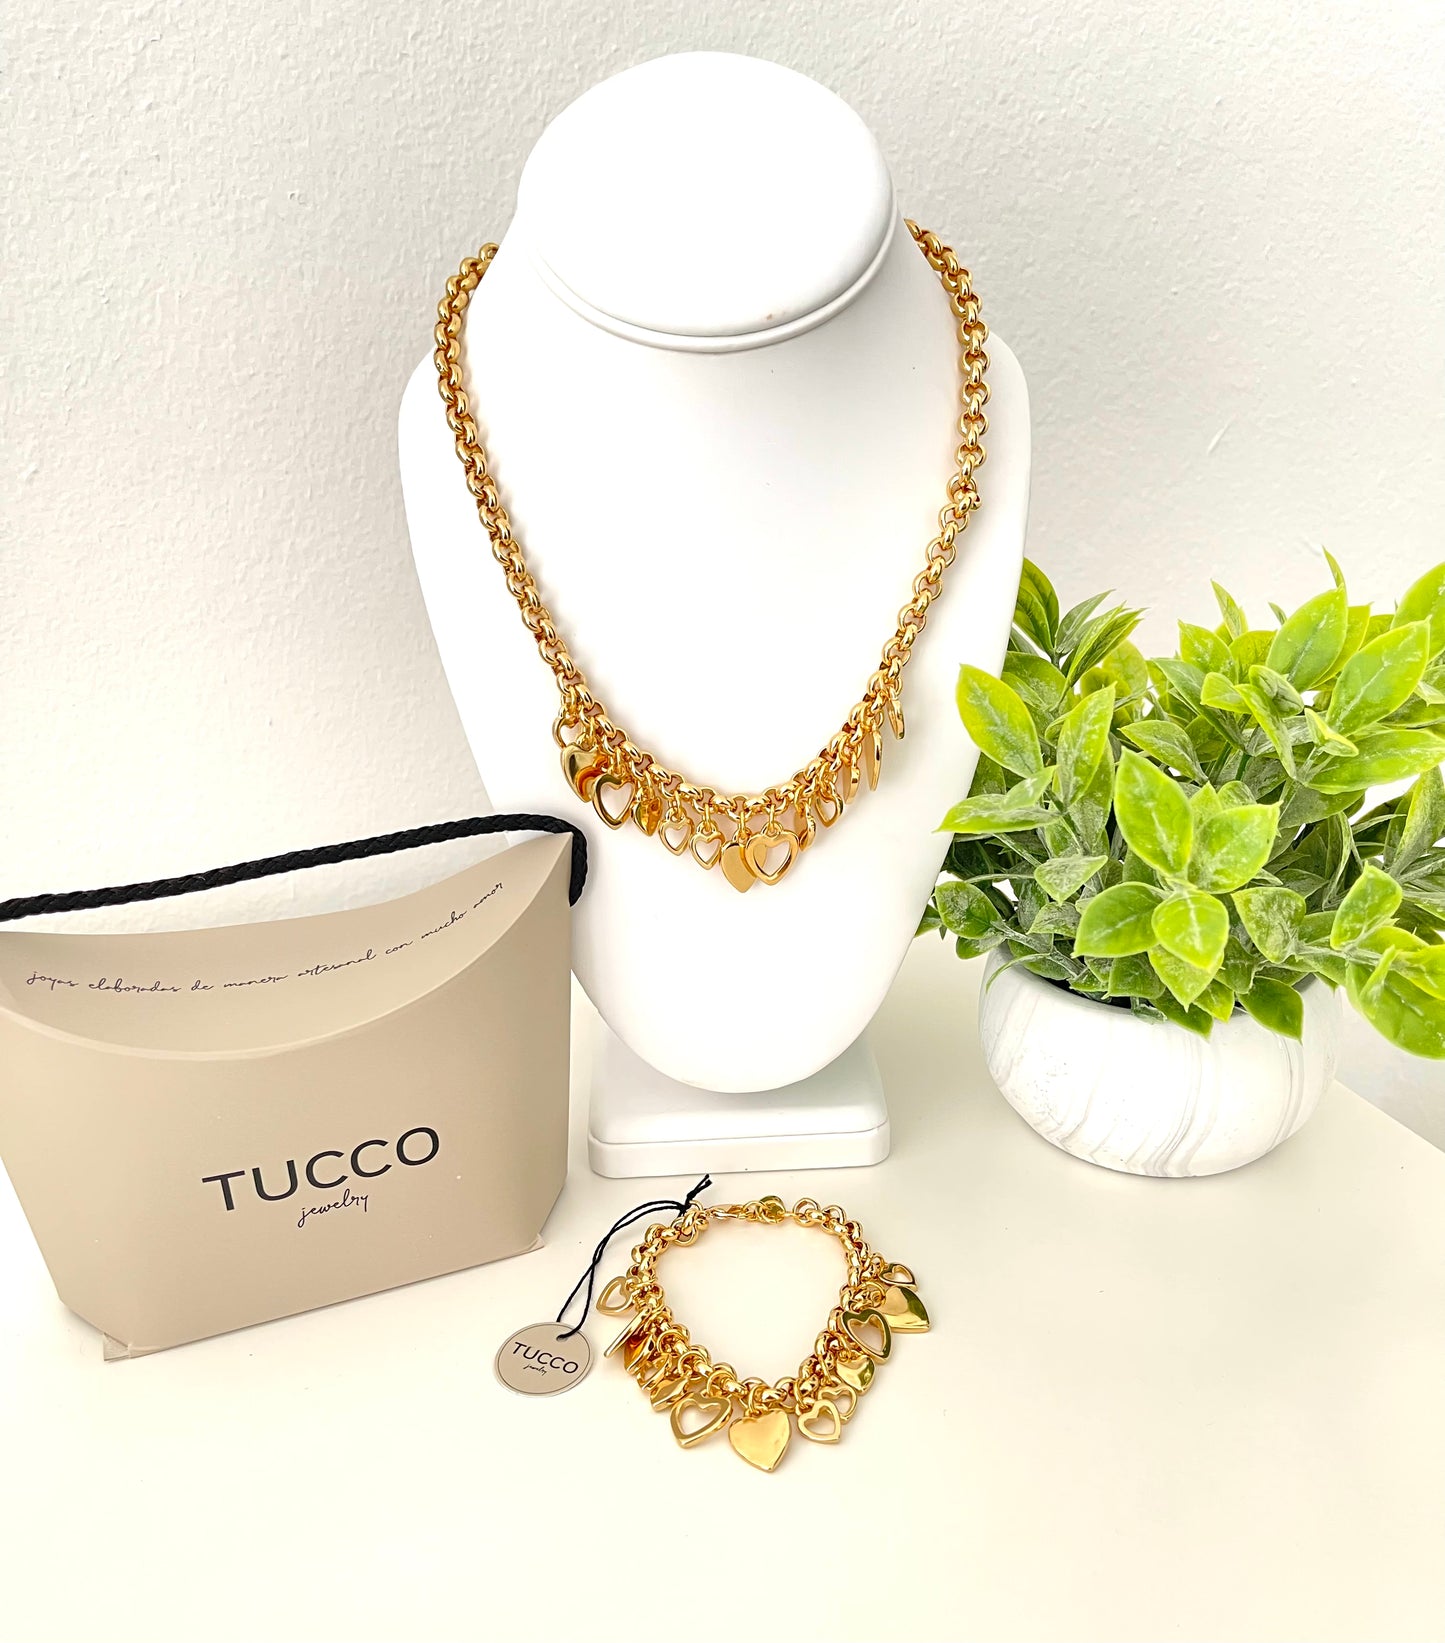 Tucco- Colección ciao amore oro